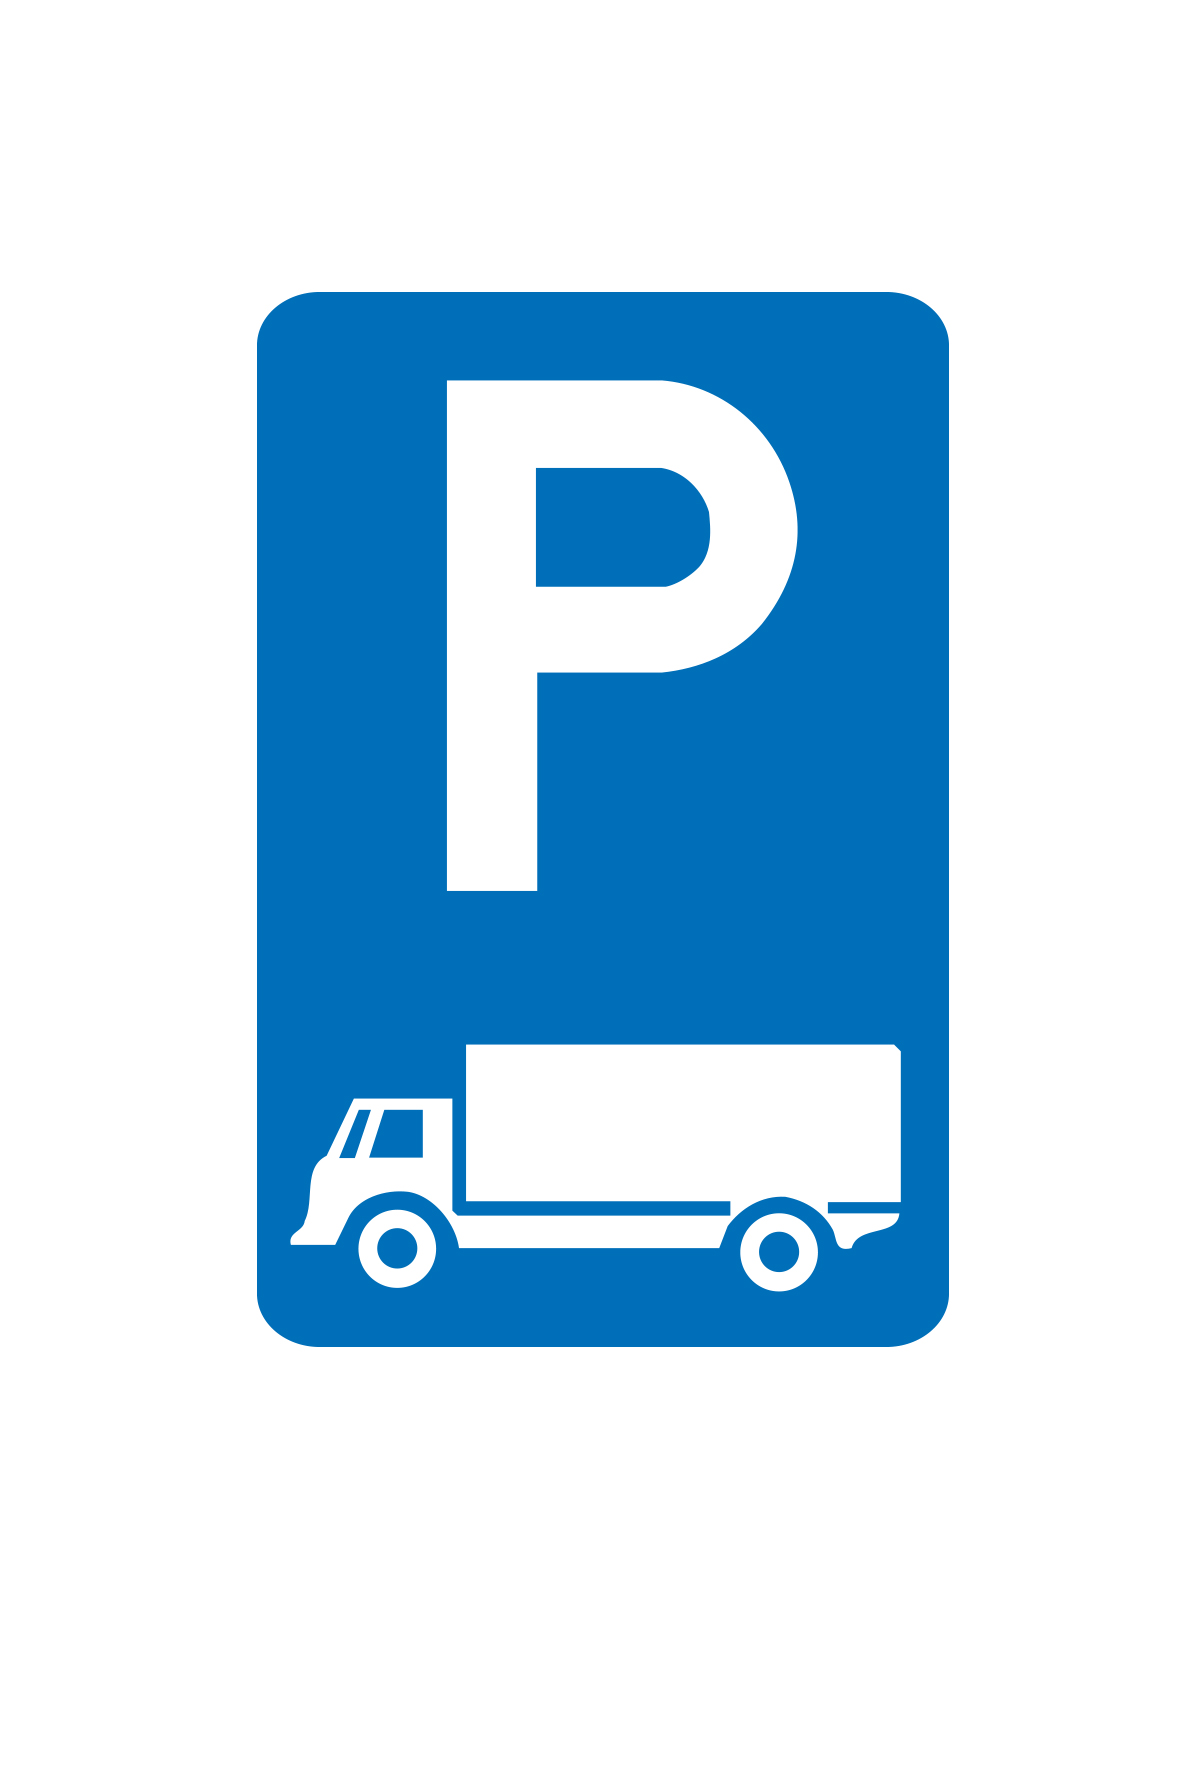 E9C parkeren uitsluitend voor lichte vrachtauto's